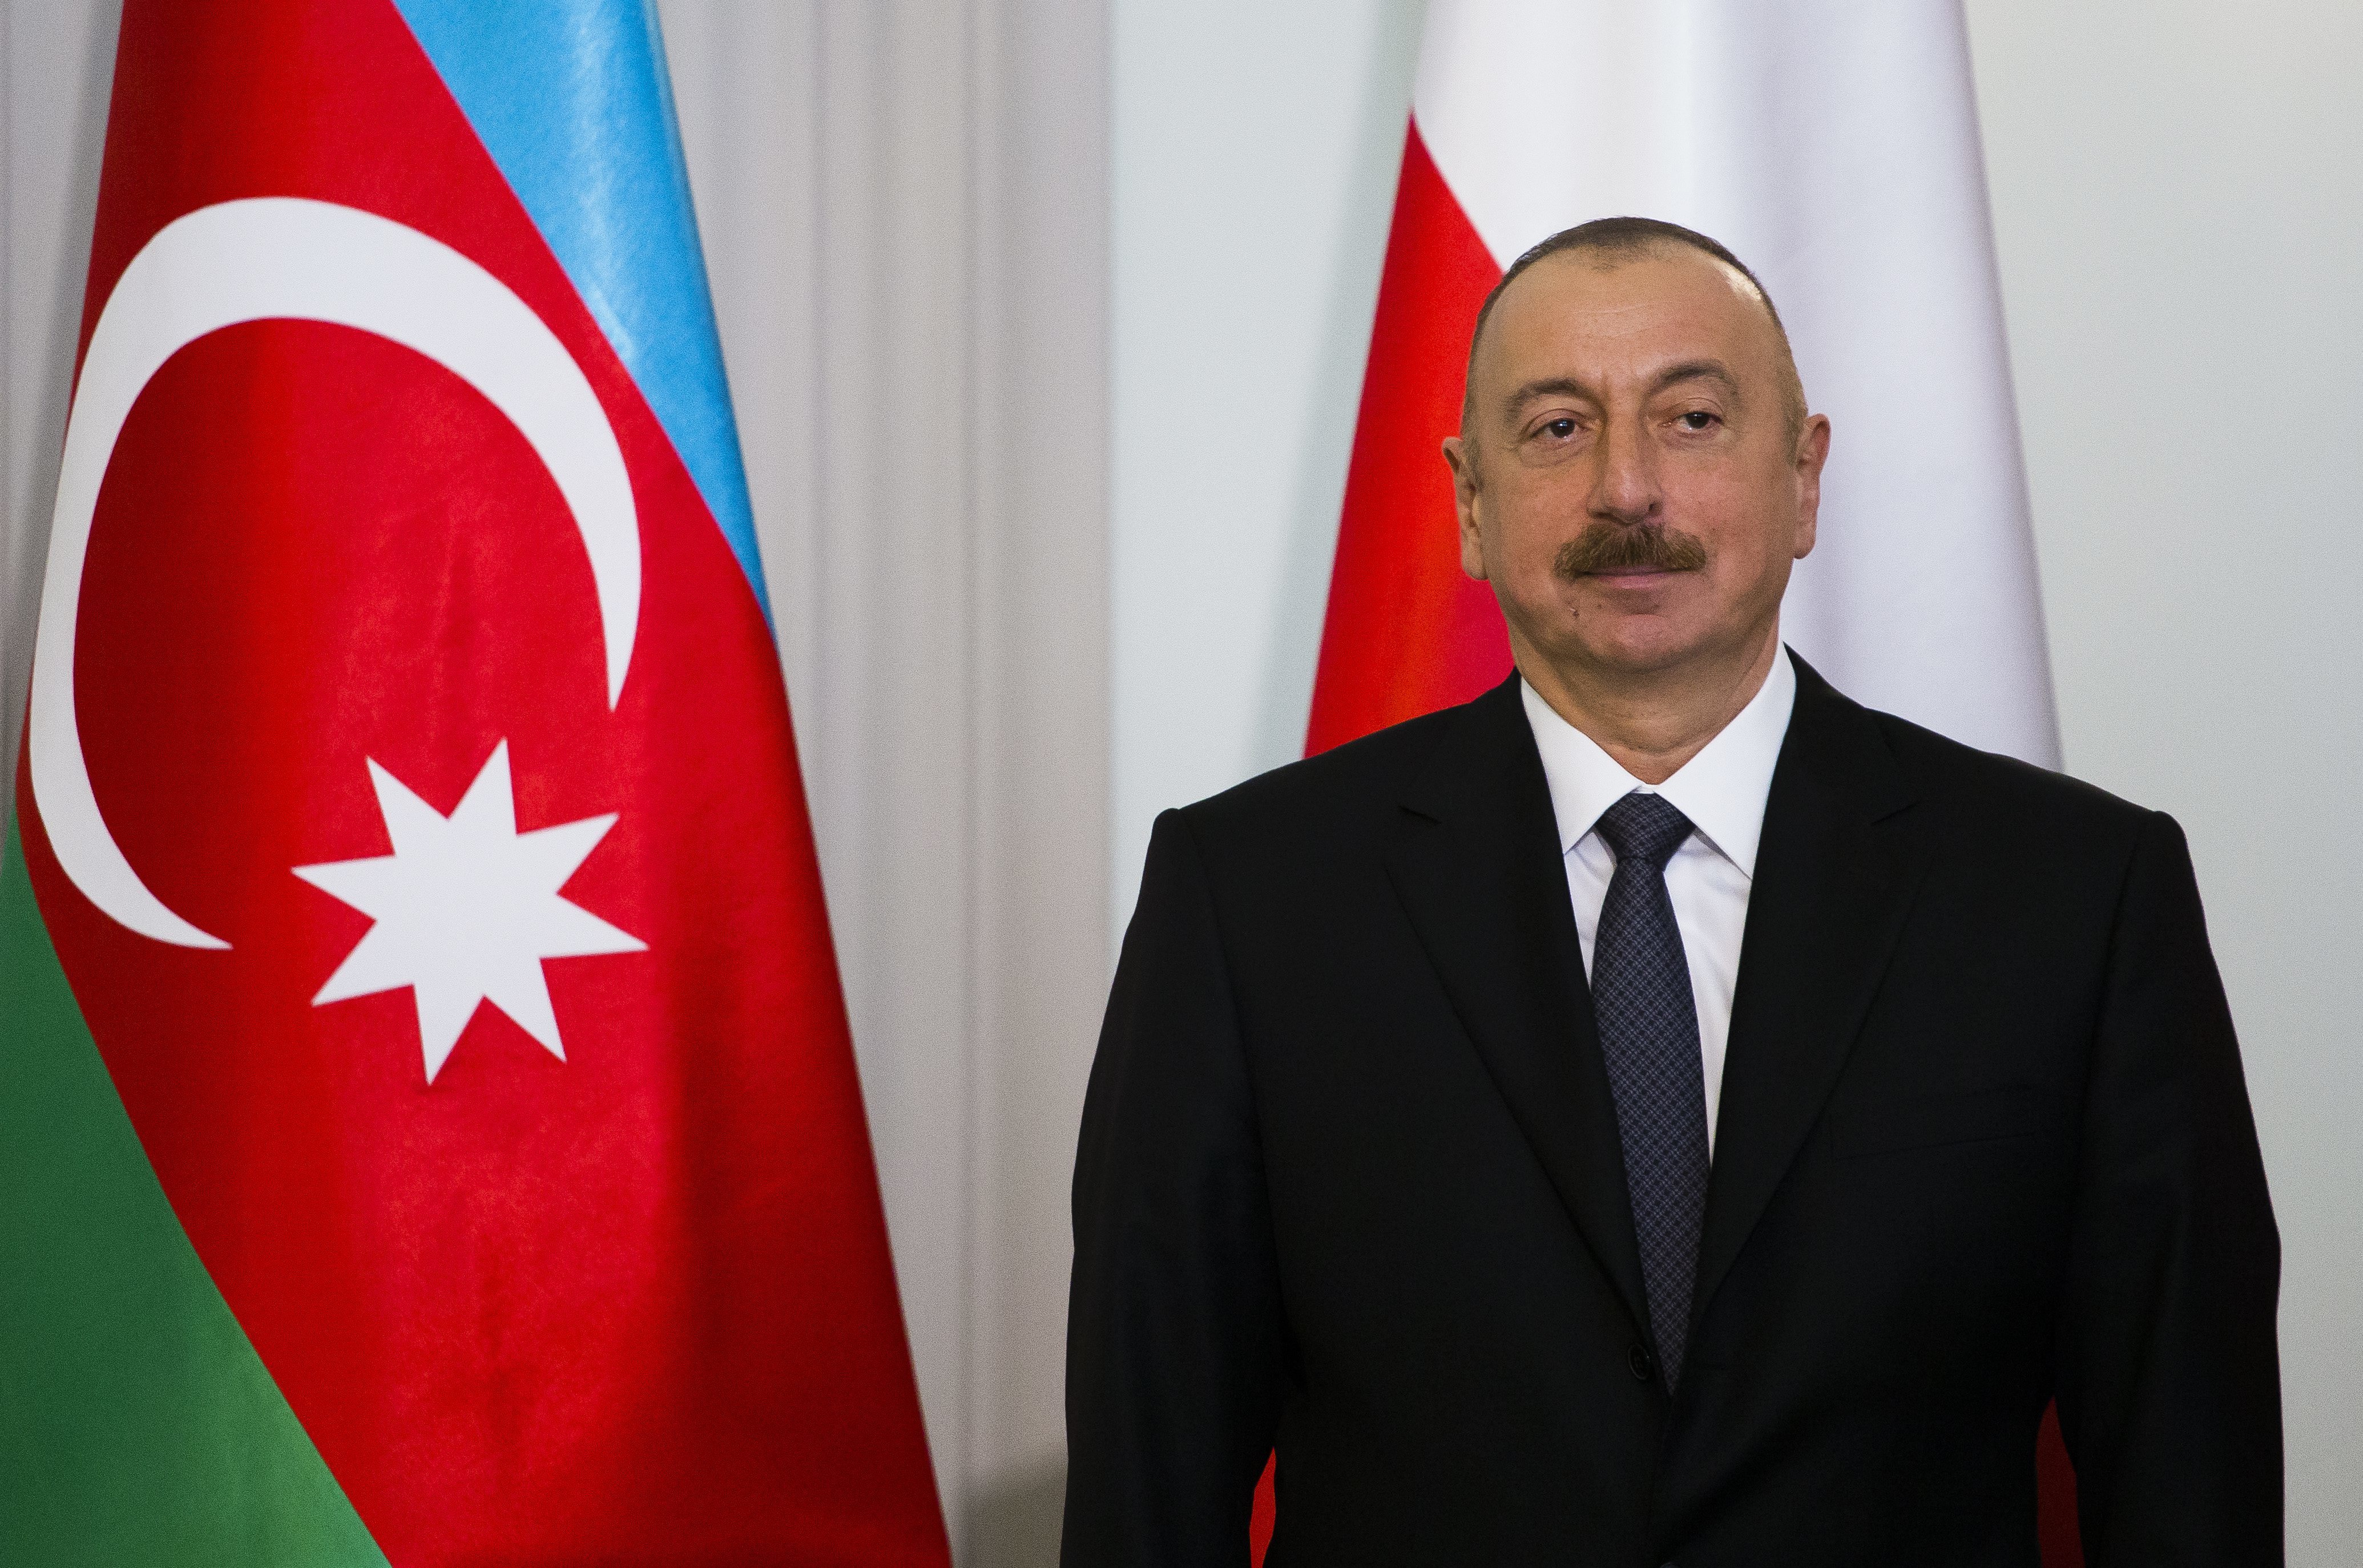 İlham Heydər ist als Nachfolger seines Vaters seit 2003 amtierender Präsident Aserbaidschans.